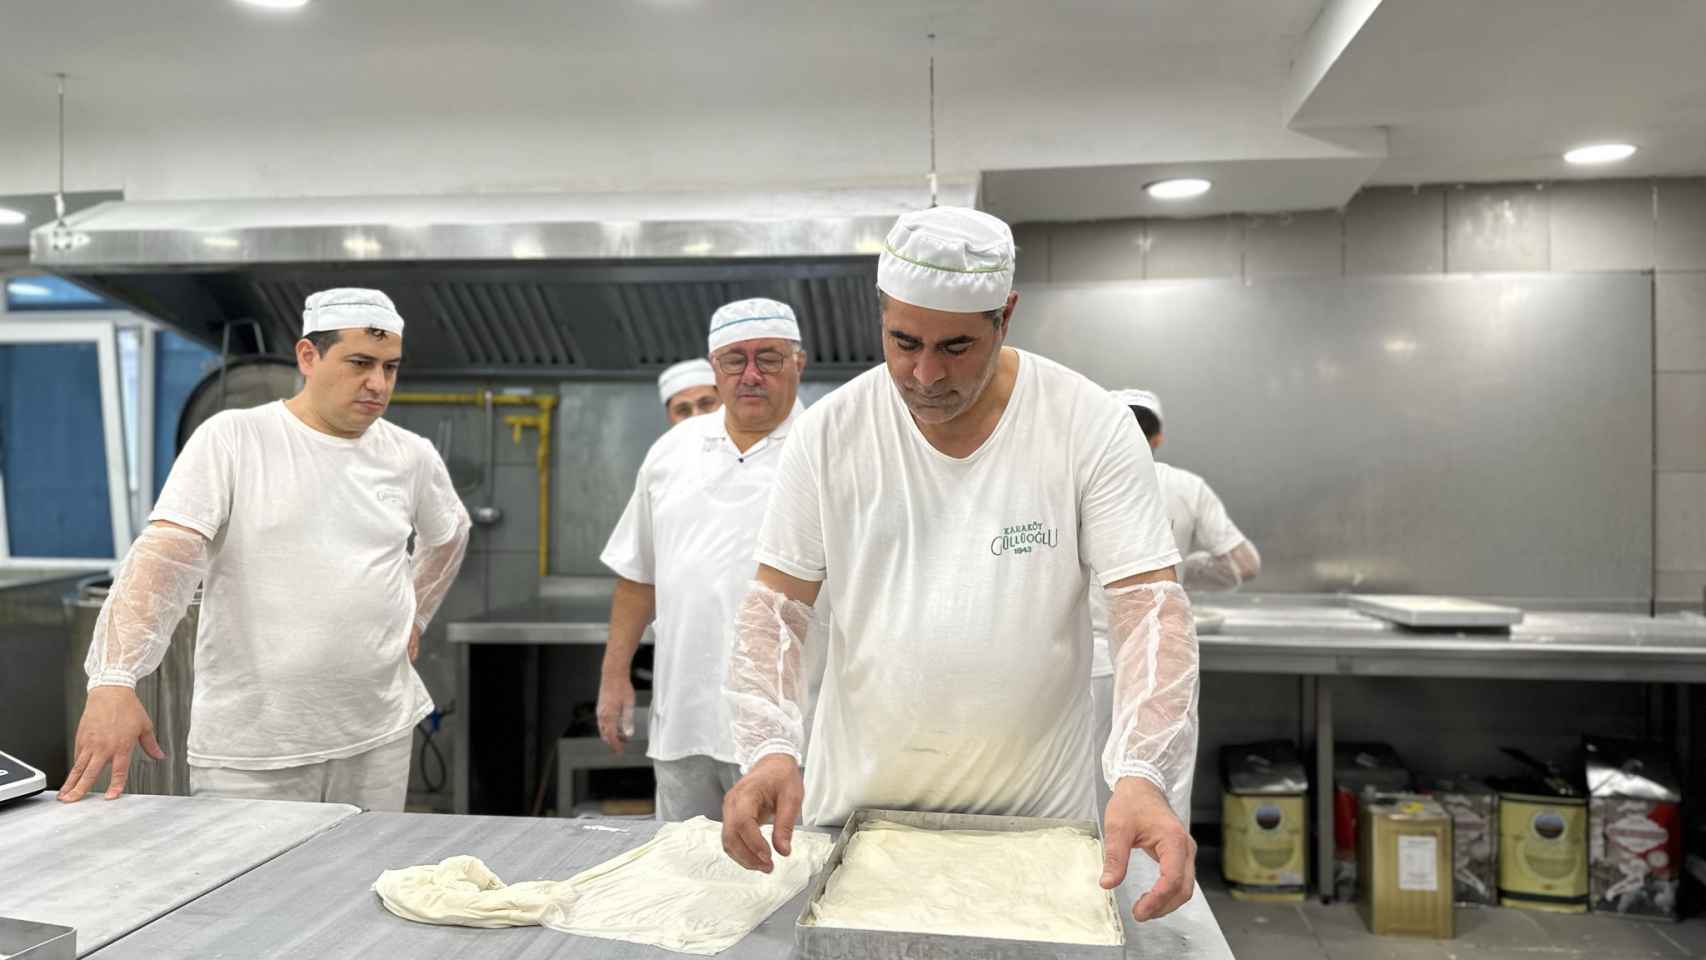 Empleados de Karaköy Güllüoğlu trabajando la masa.